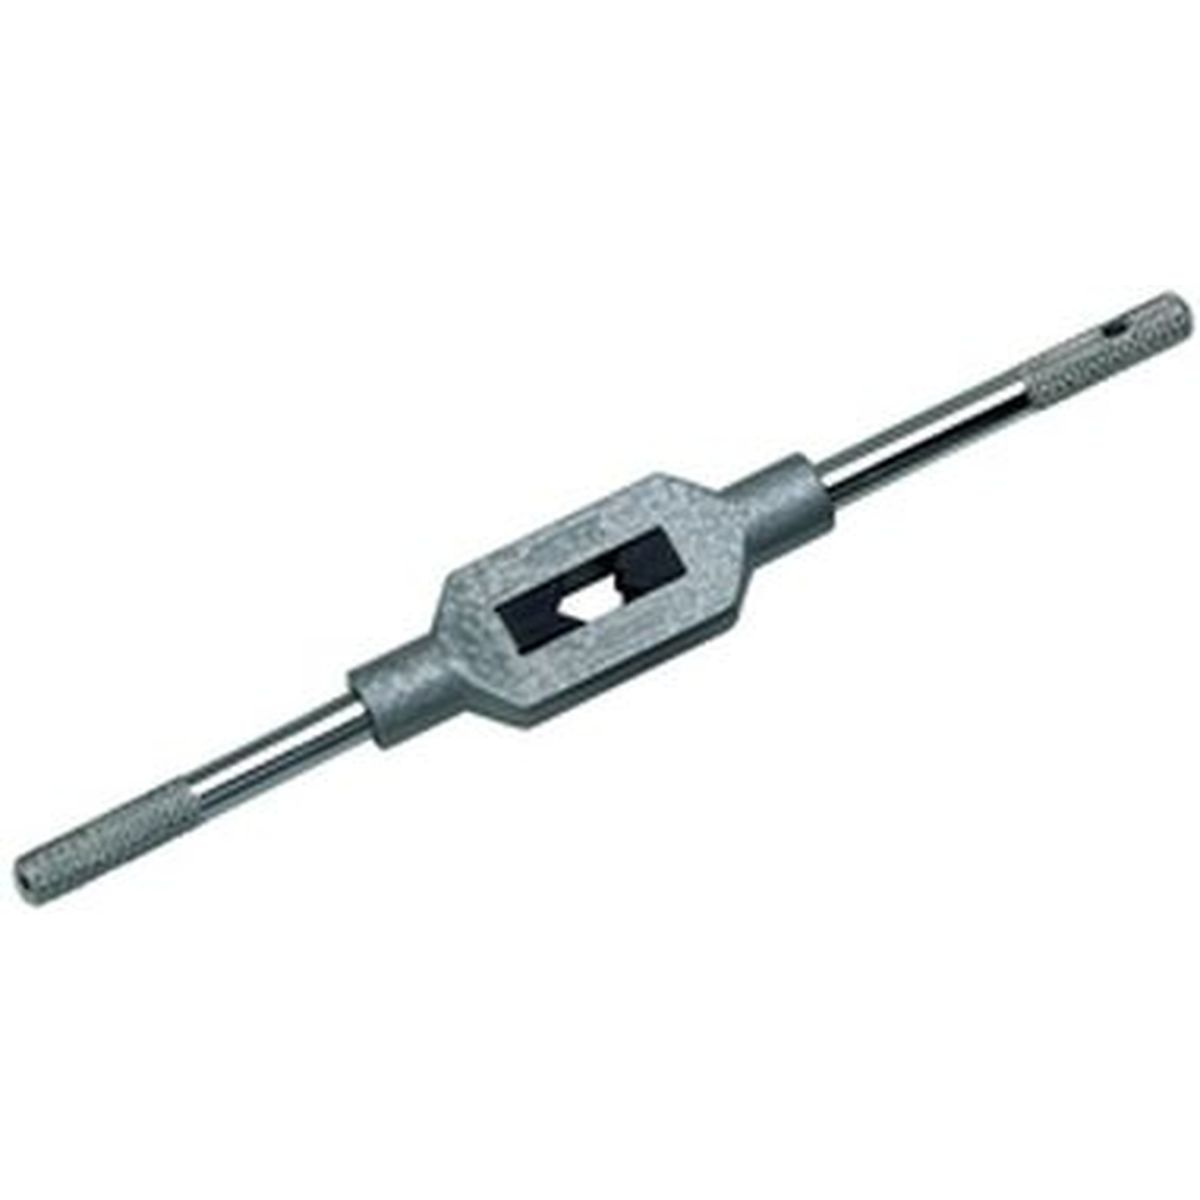 VÖLKEL Adjustable Tap Wrenches DIN1814 4 